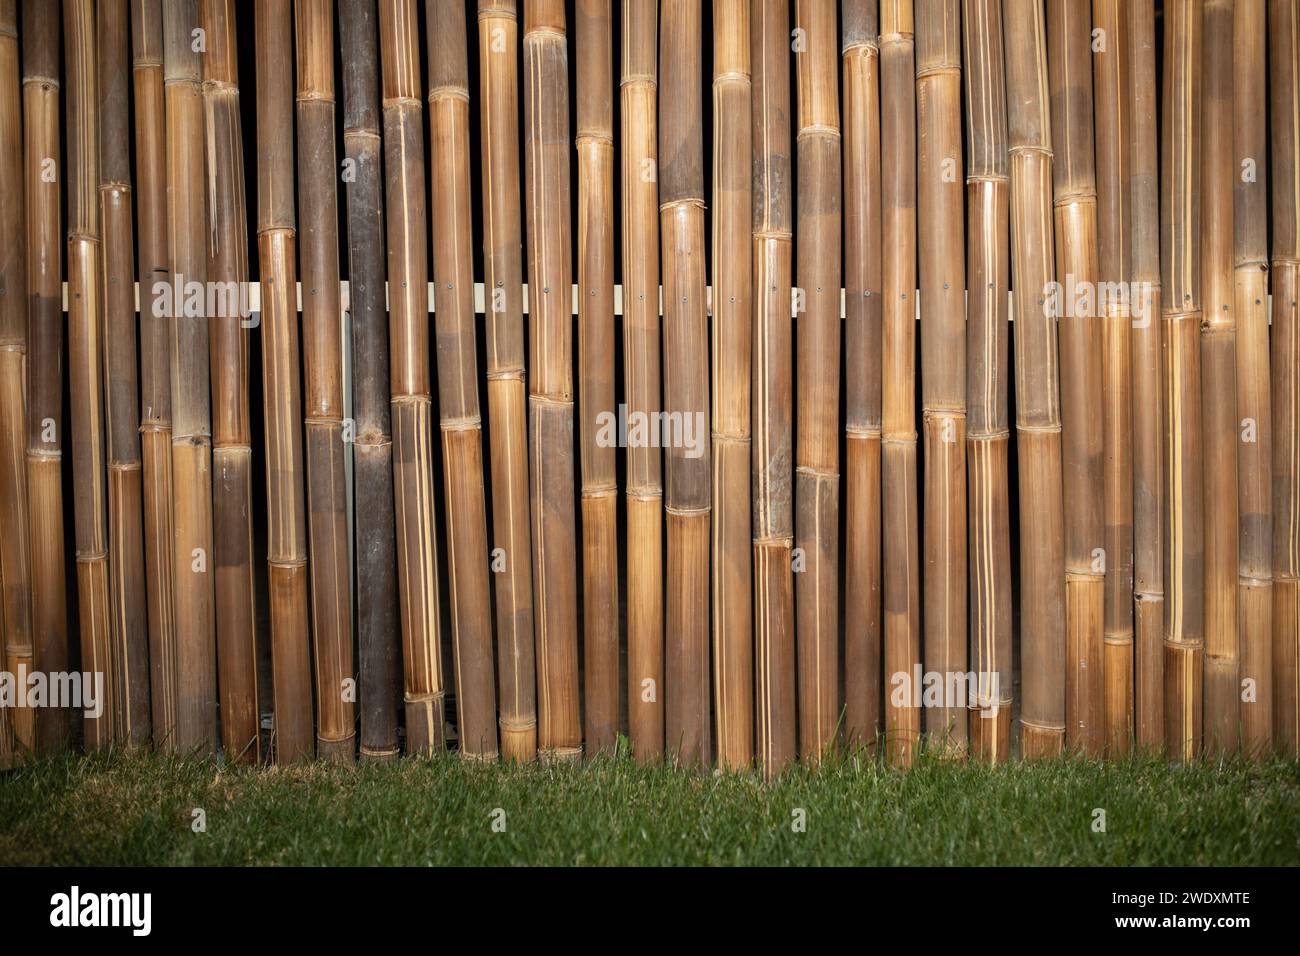 Bambuszaun Hintergrund Stock Gras. Hochwertige Fotos Stockfoto